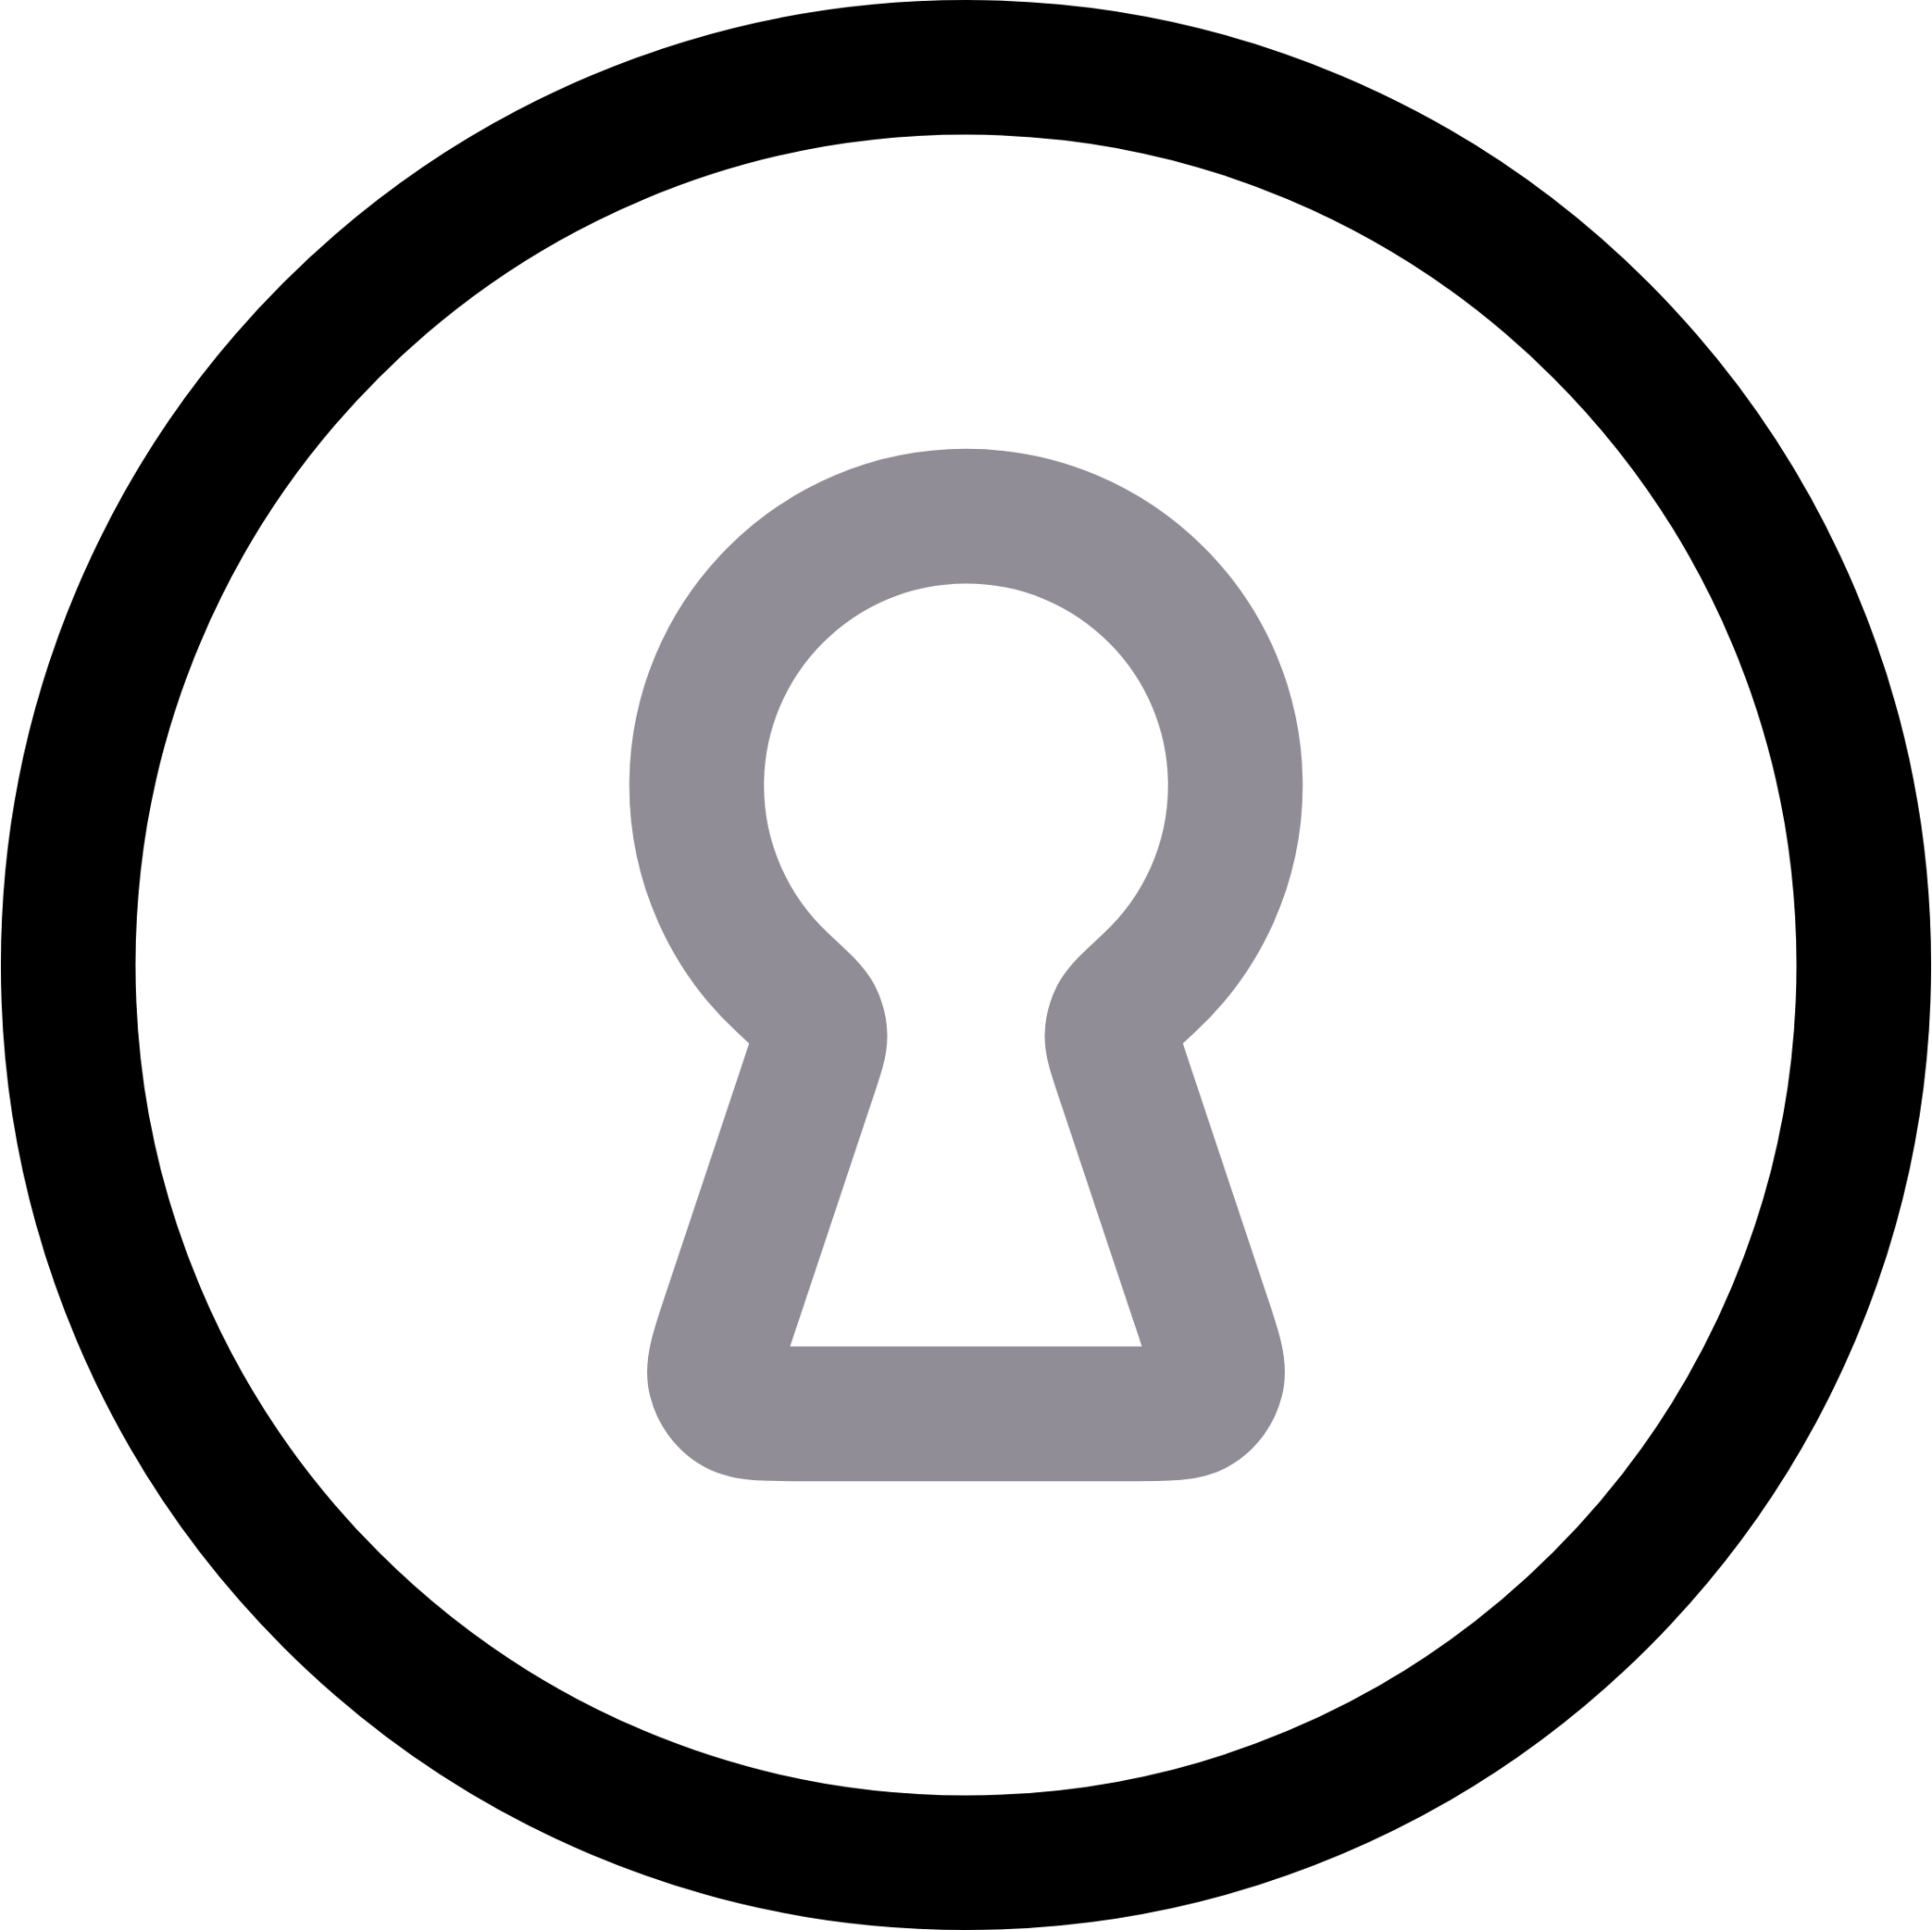 lock keyhole icon